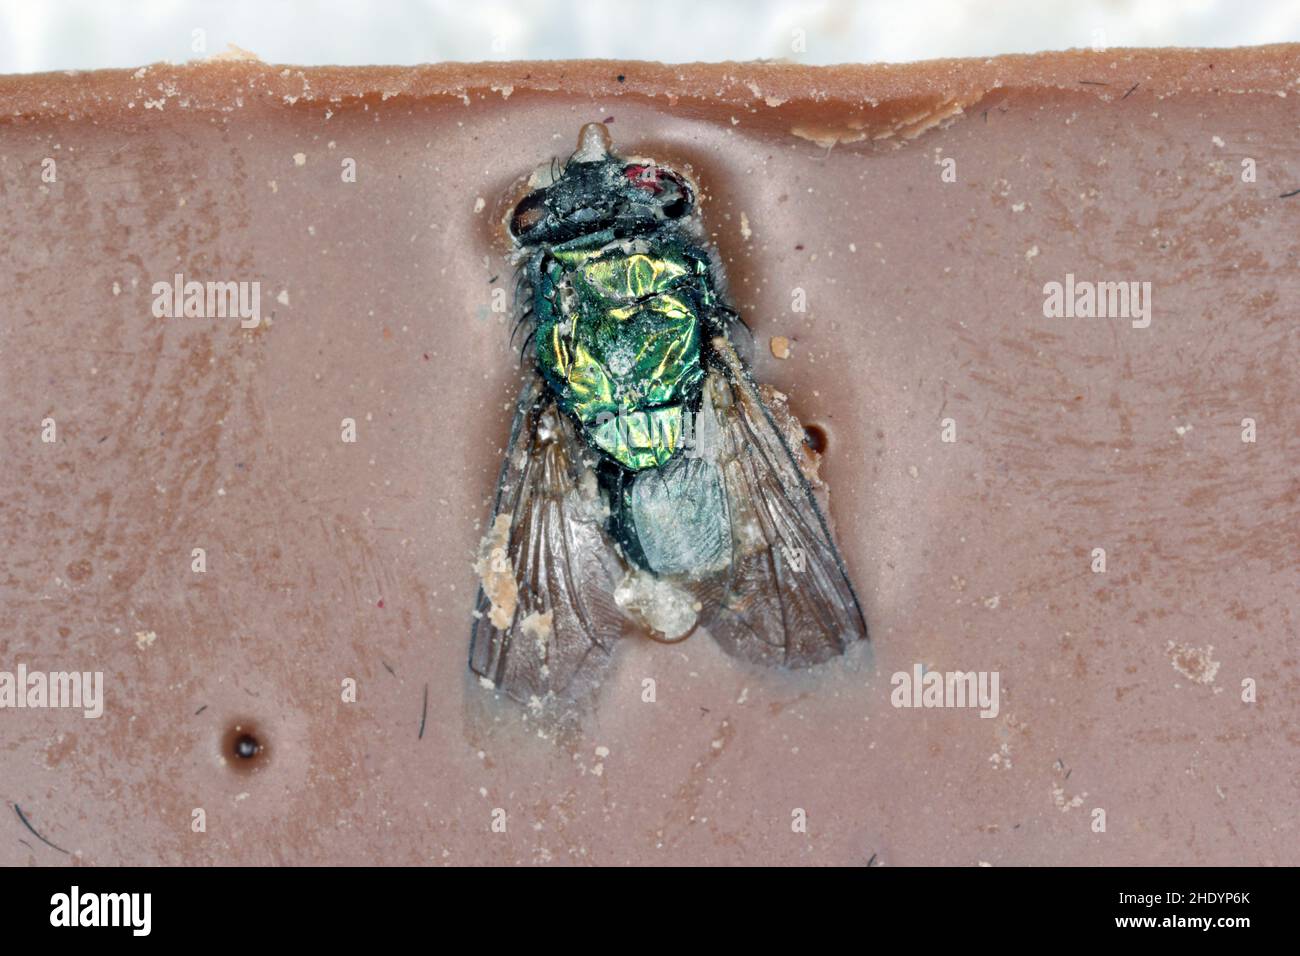 Una mosca mescolata in una barra di cioccolato. Insetto in cibo. Foto Stock